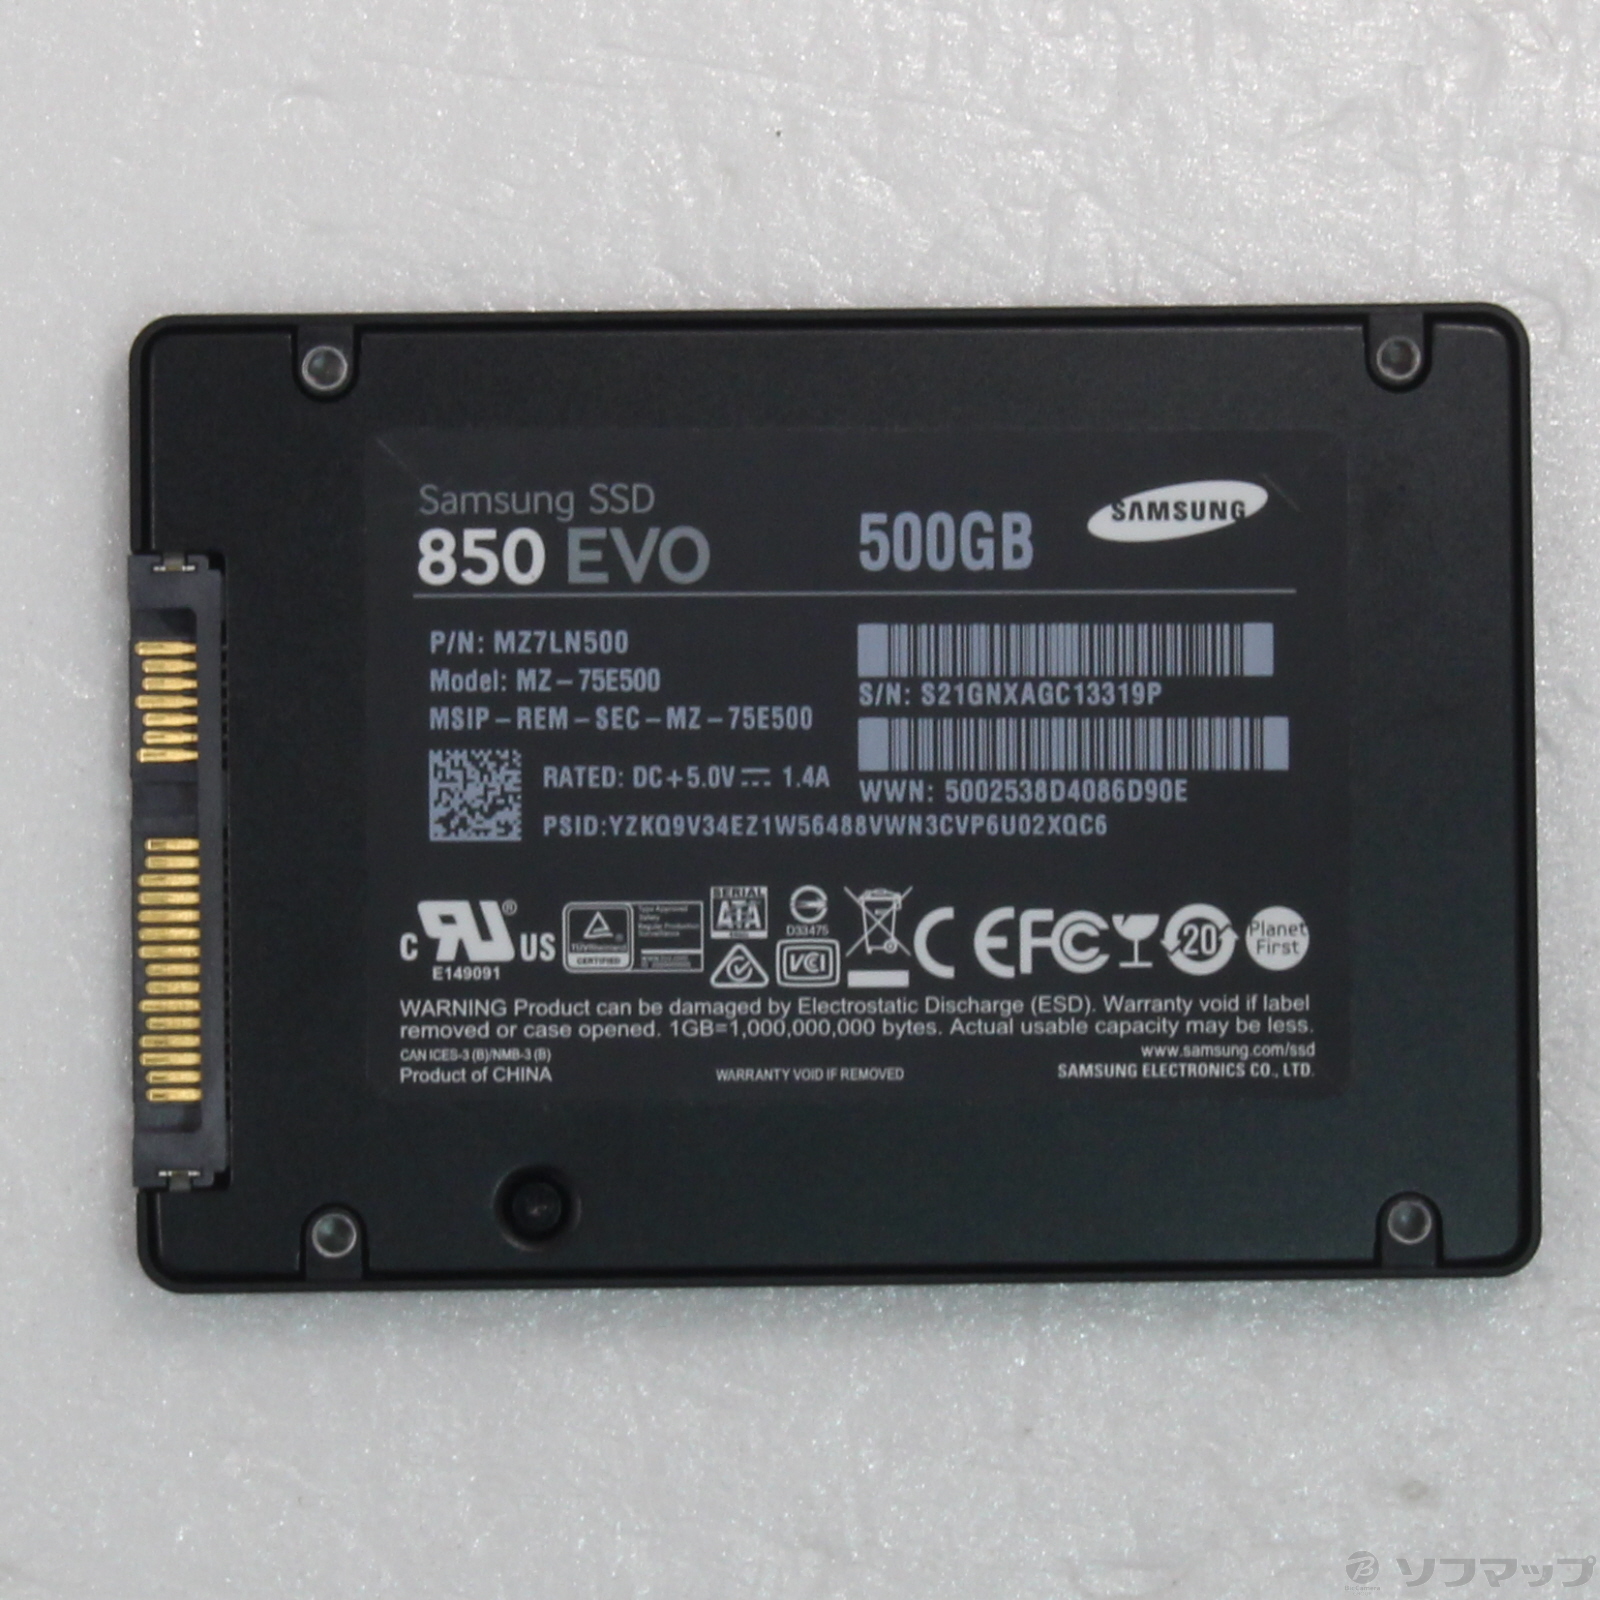 Samsung SSD 850 EVO 500GB MZ-75E500B